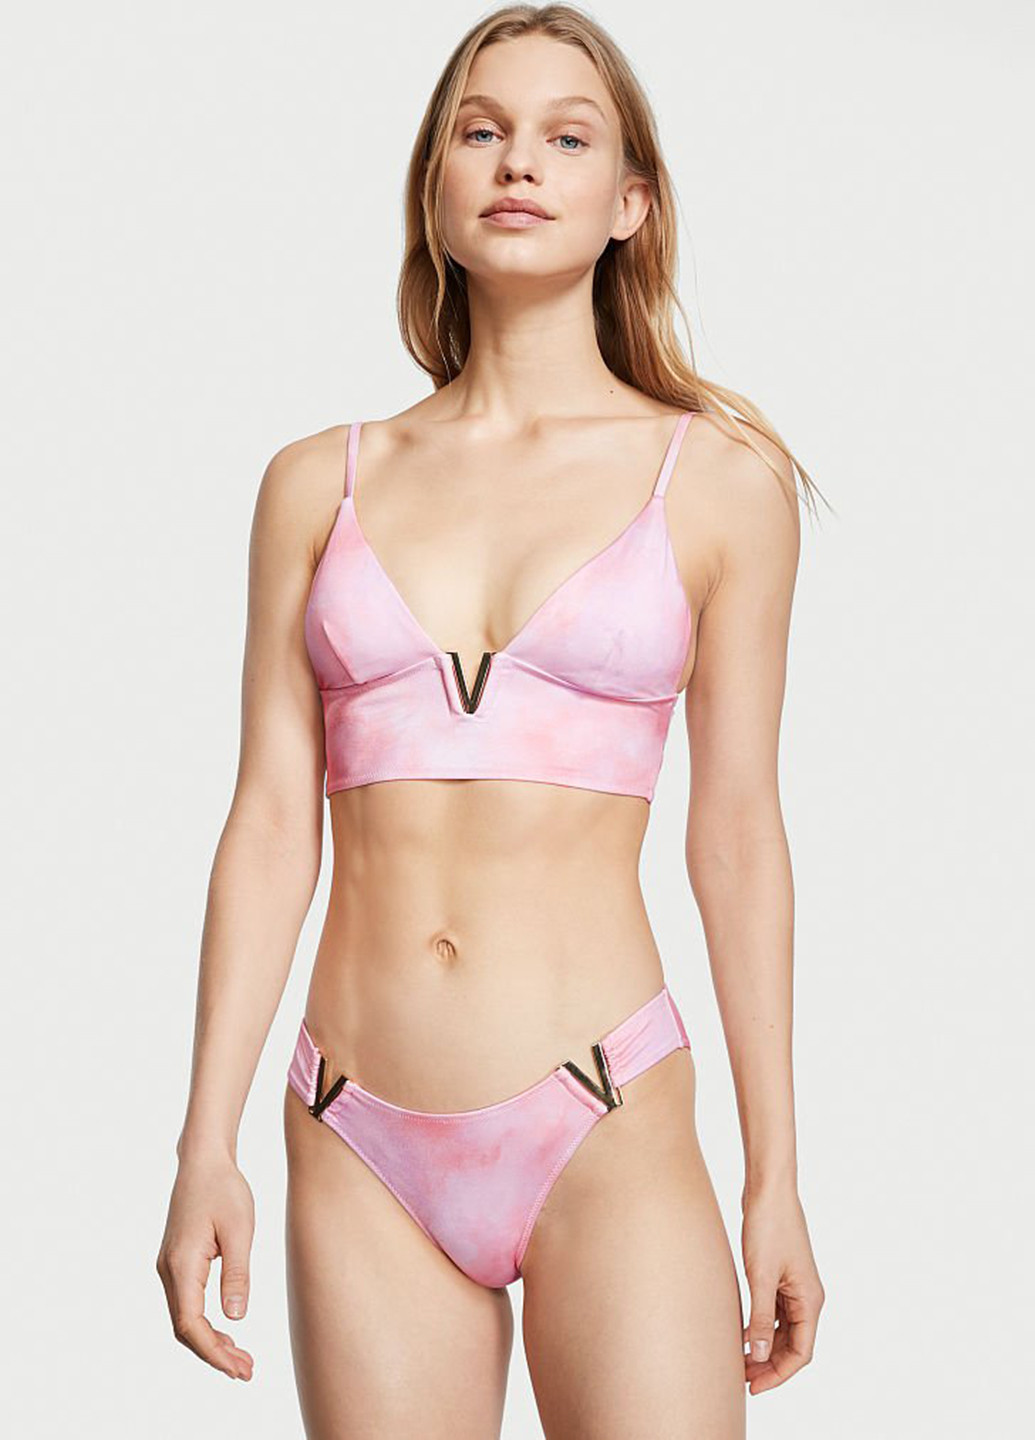 Рожевий літній купальник (топ, трусики) бікіні Victoria's Secret